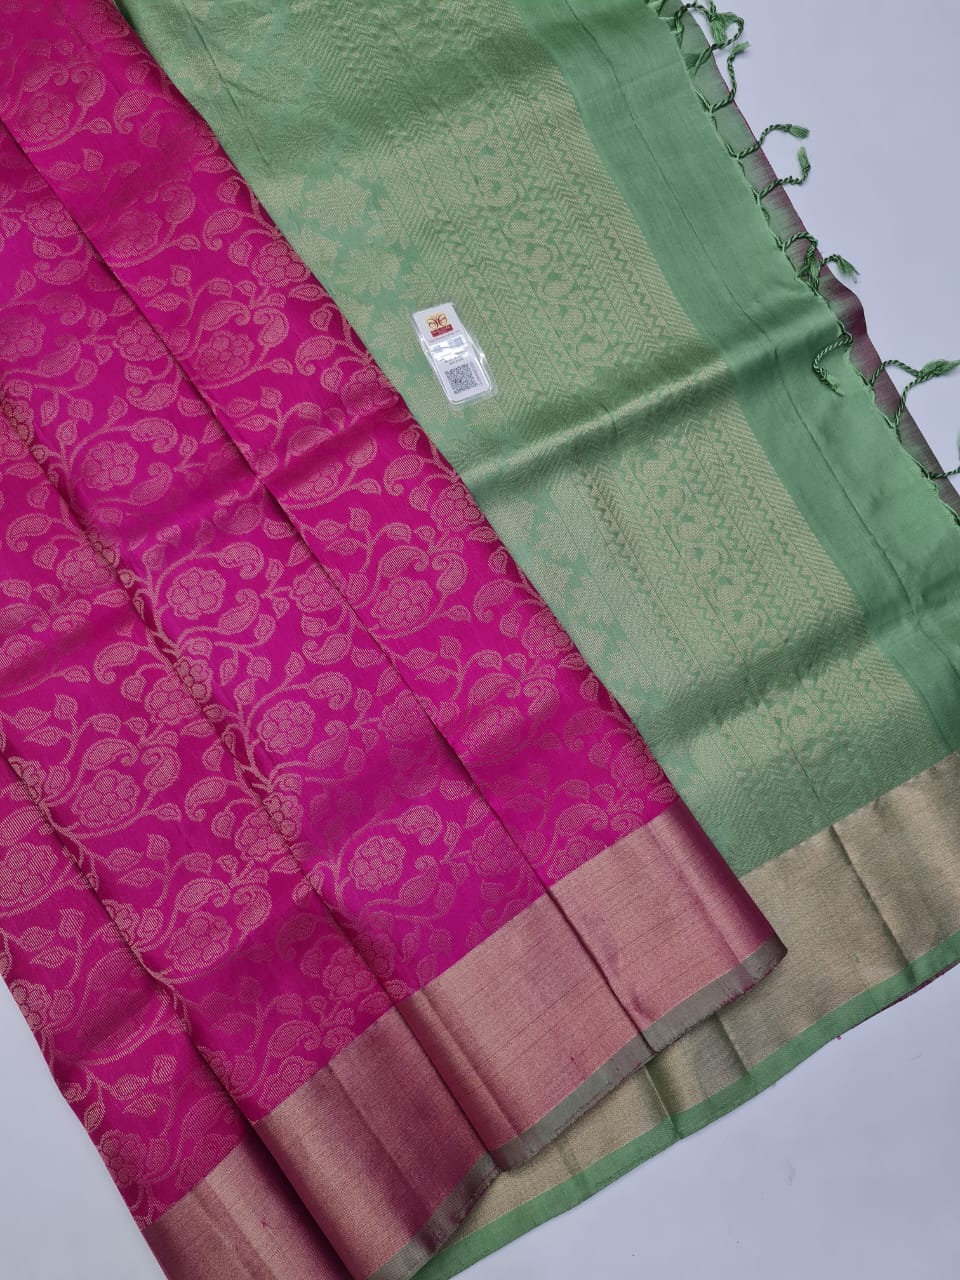 Kanchipuram Pure Bridal Jacquard Soft Silk Saree